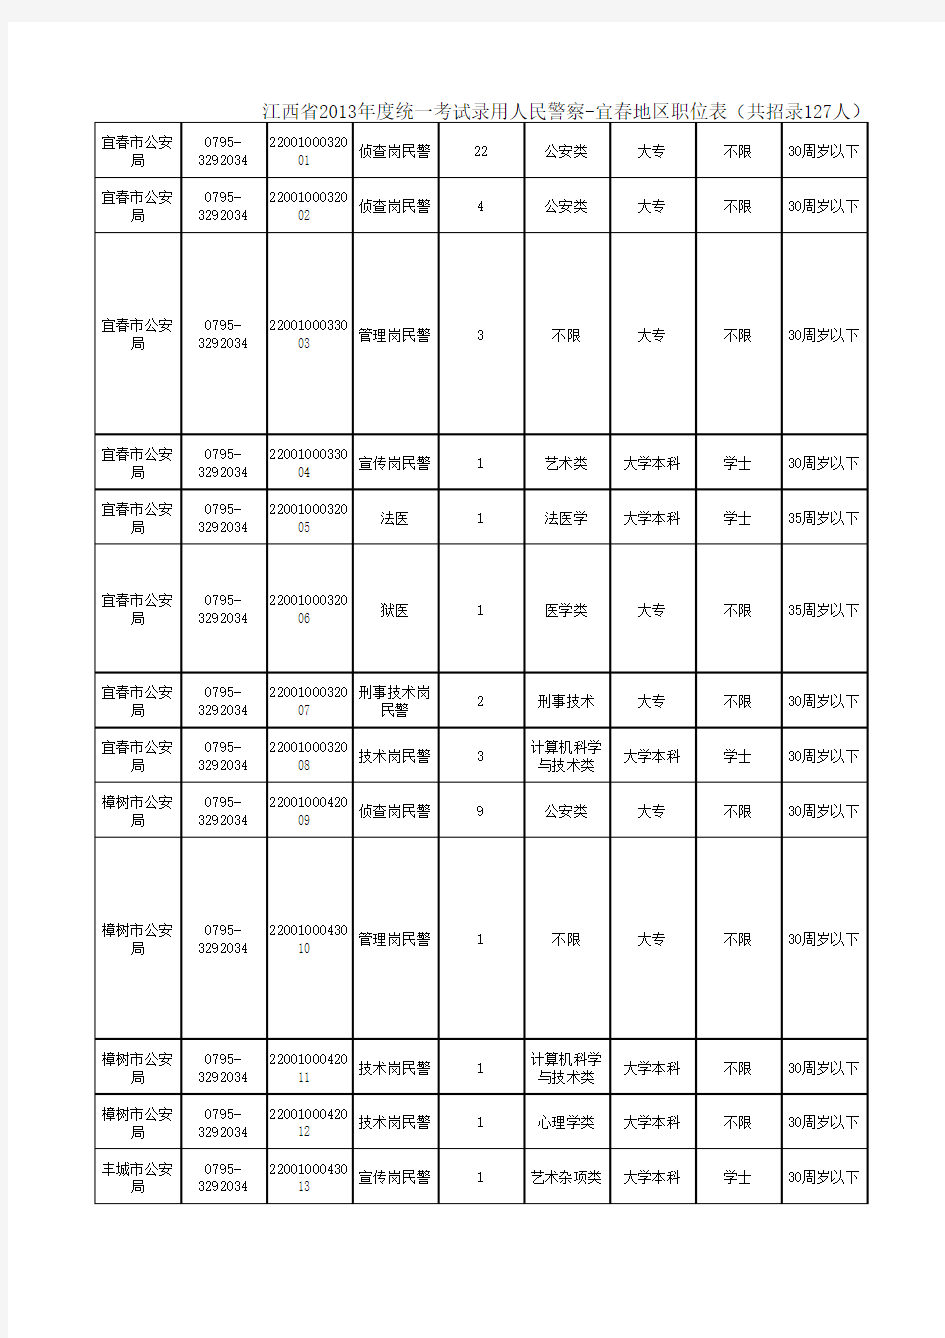 2013年度统一考试录用人民警察宜春地区职位表(共招录127人)